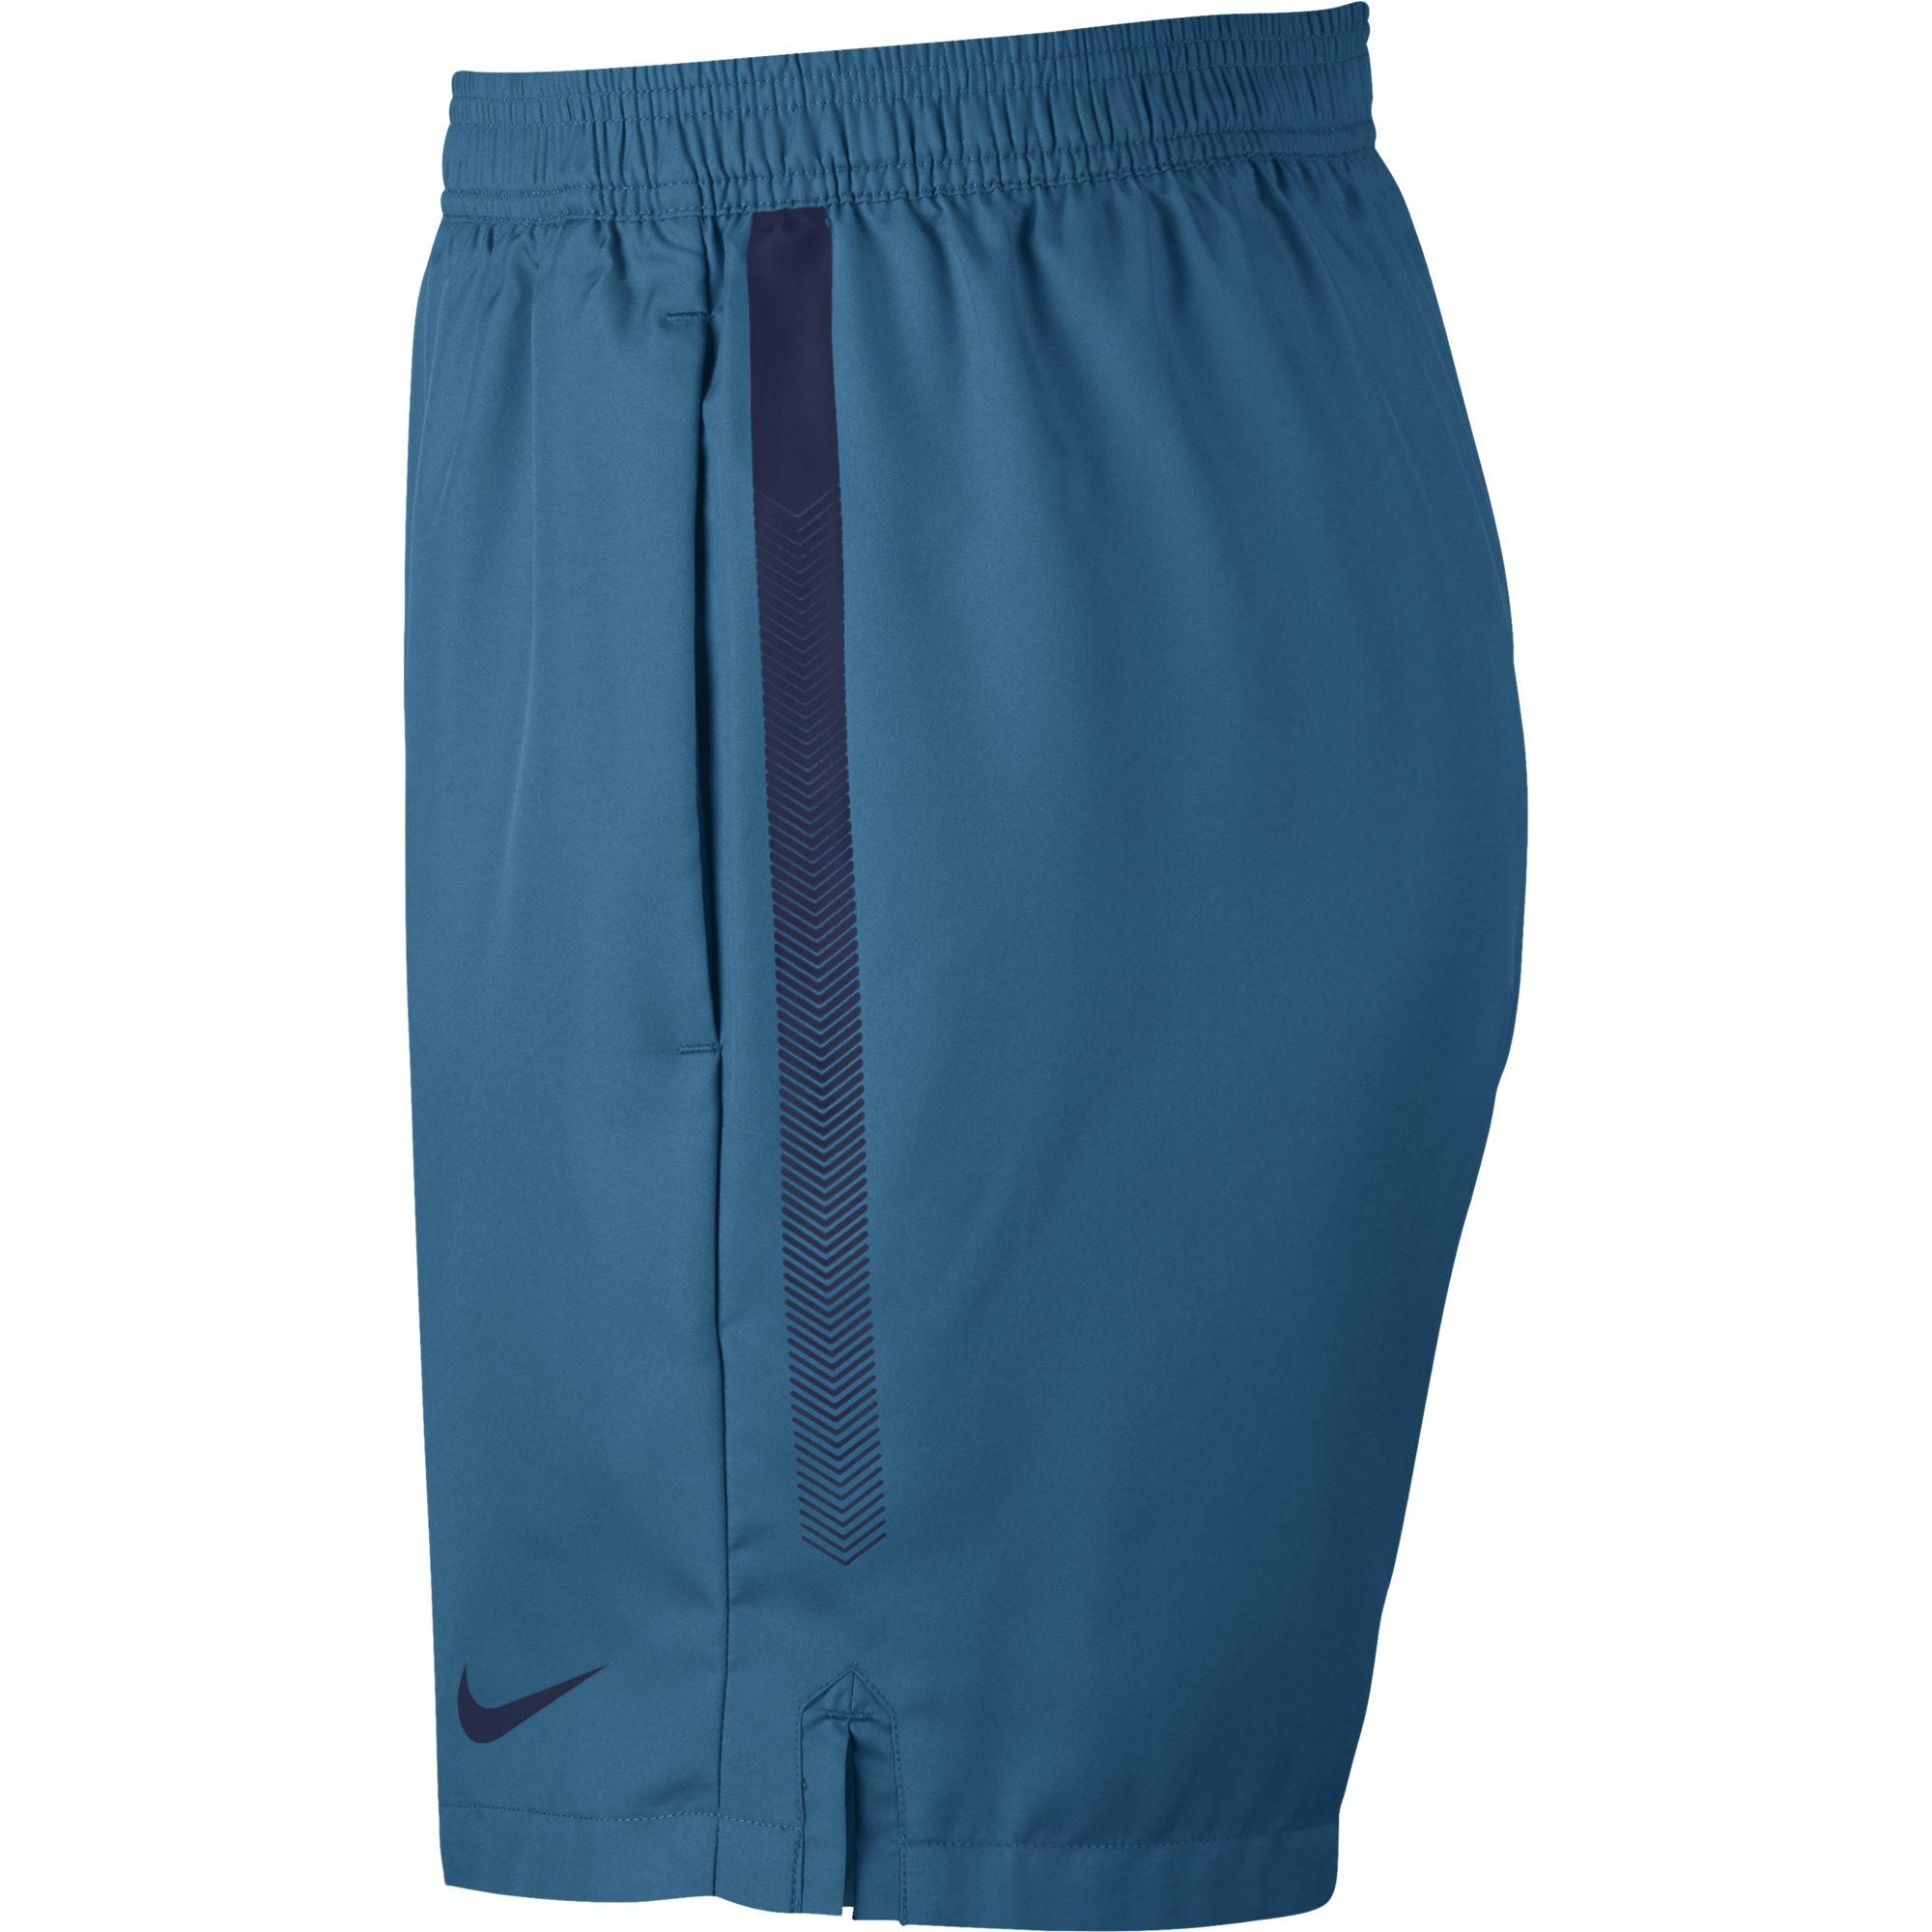 Nike Mens Dry 7 Inch Tennis Shorts - Blue - Tennisnuts.com